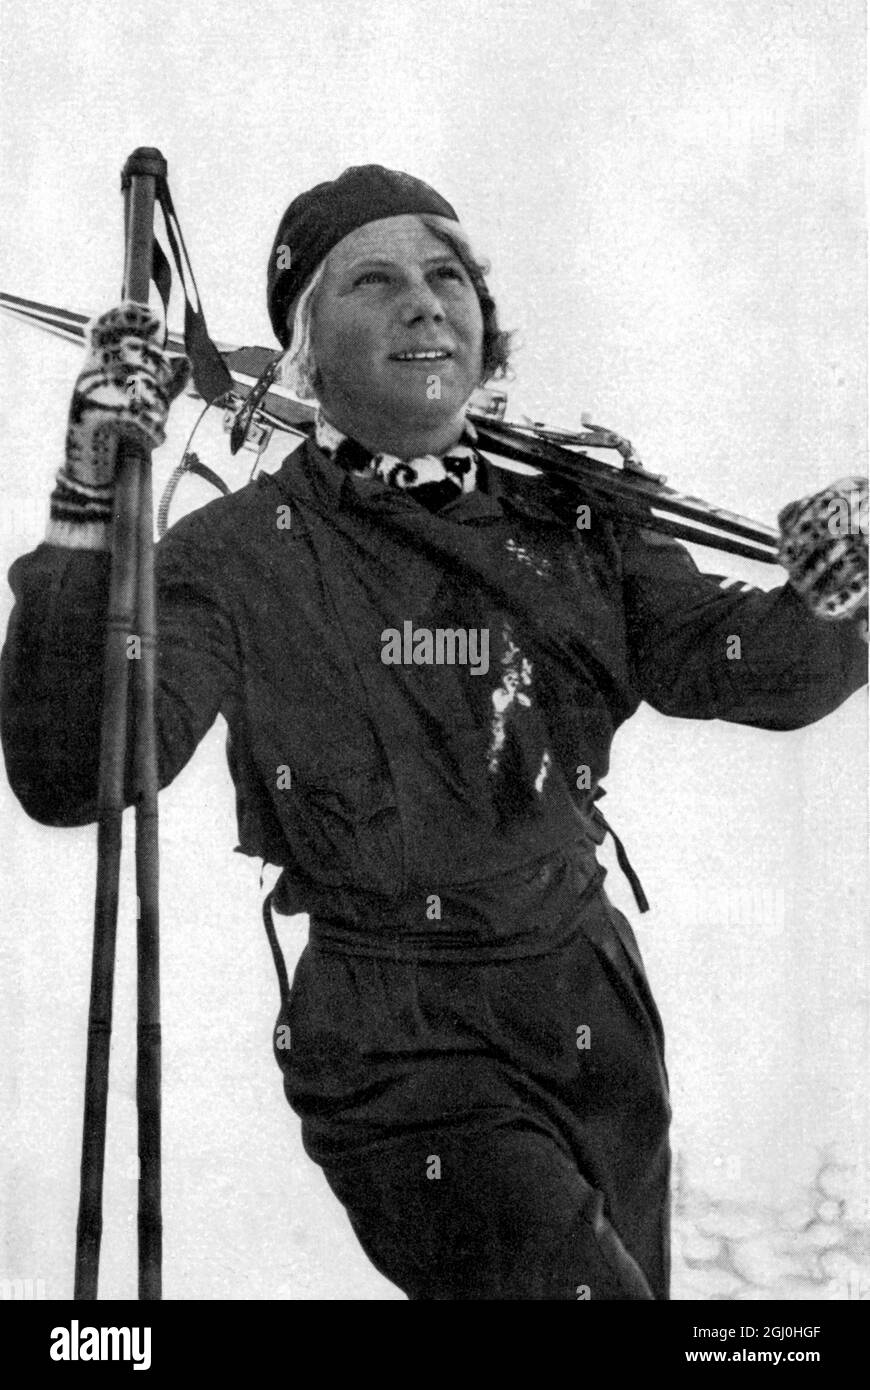 1936 Olympische Winterspiele Garmisch - Partenkirchen, Deutschland Laila Schou-Nilsen, Norwegen, Weltrekordlerin für Eisschnelllauf, aber da es keine Veranstaltung für Frauen gab, nahm sie an dem alpinen Ski-Wettbewerb Teil, bei dem sie die Bronzemedaille erhielt. ©TopFoto Stockfoto